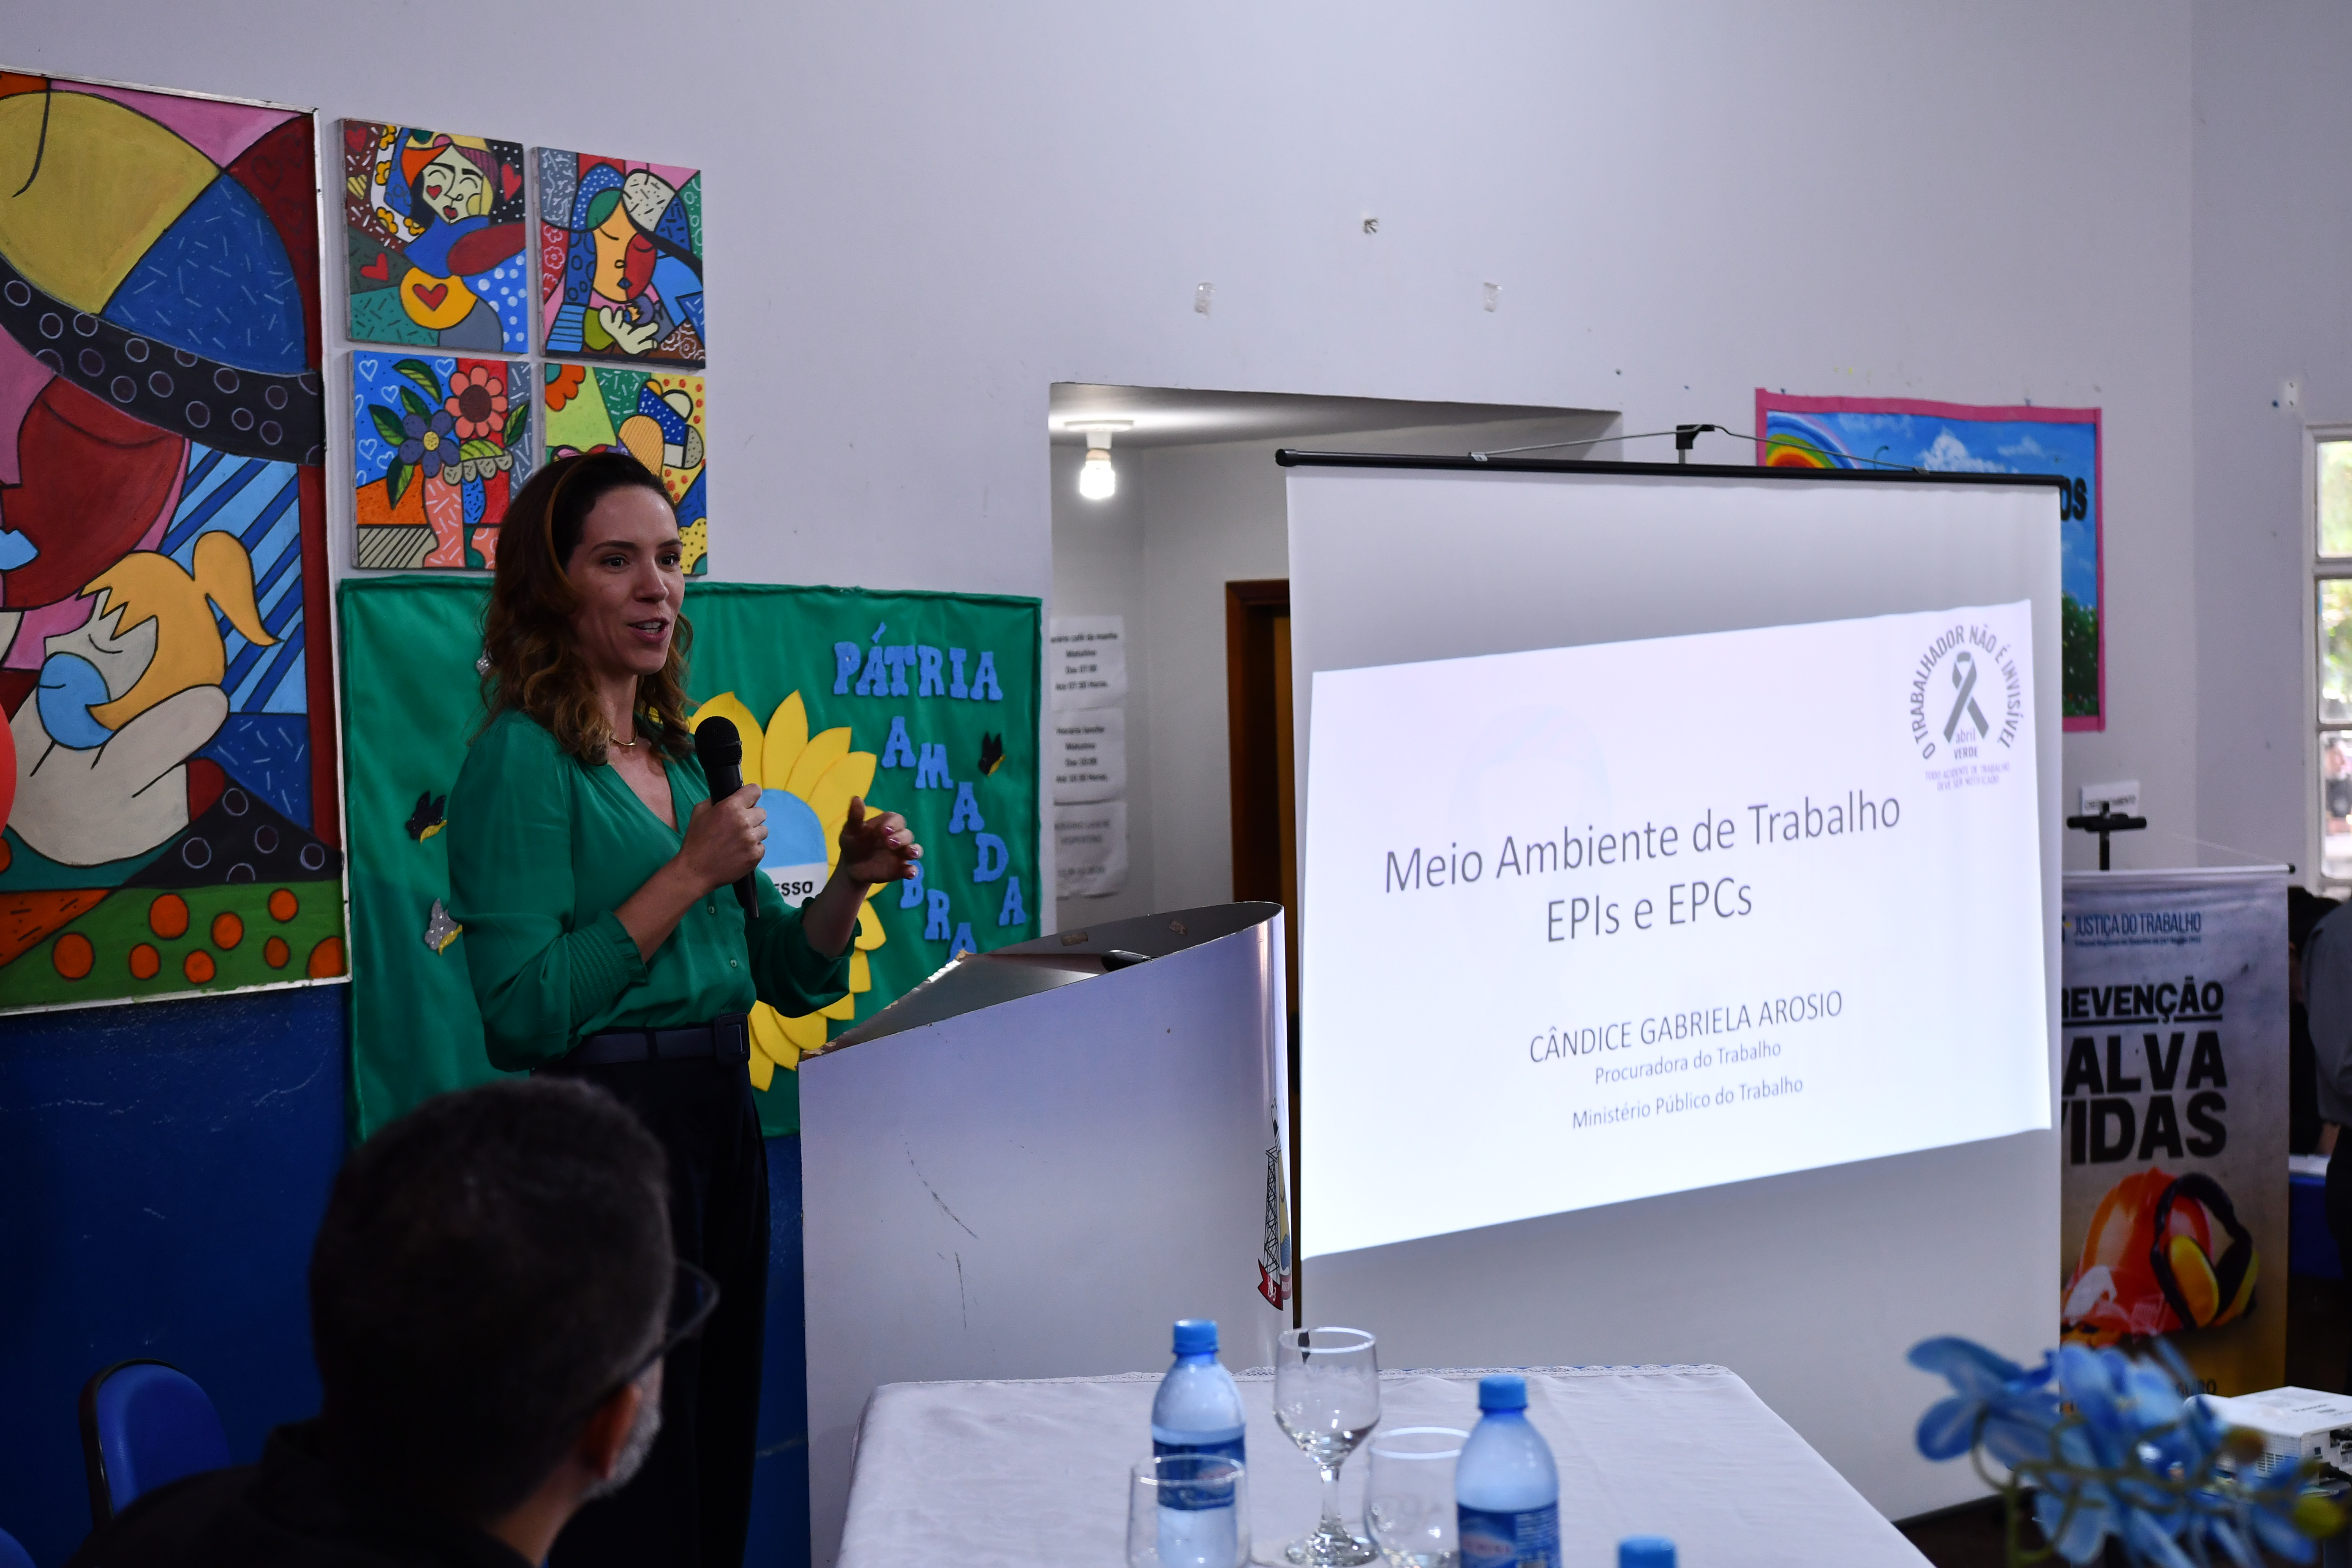 A Procuradora do Trabalho, Cândice Gabriela Arósio abordou sobre princípios preventivos e de precaução.